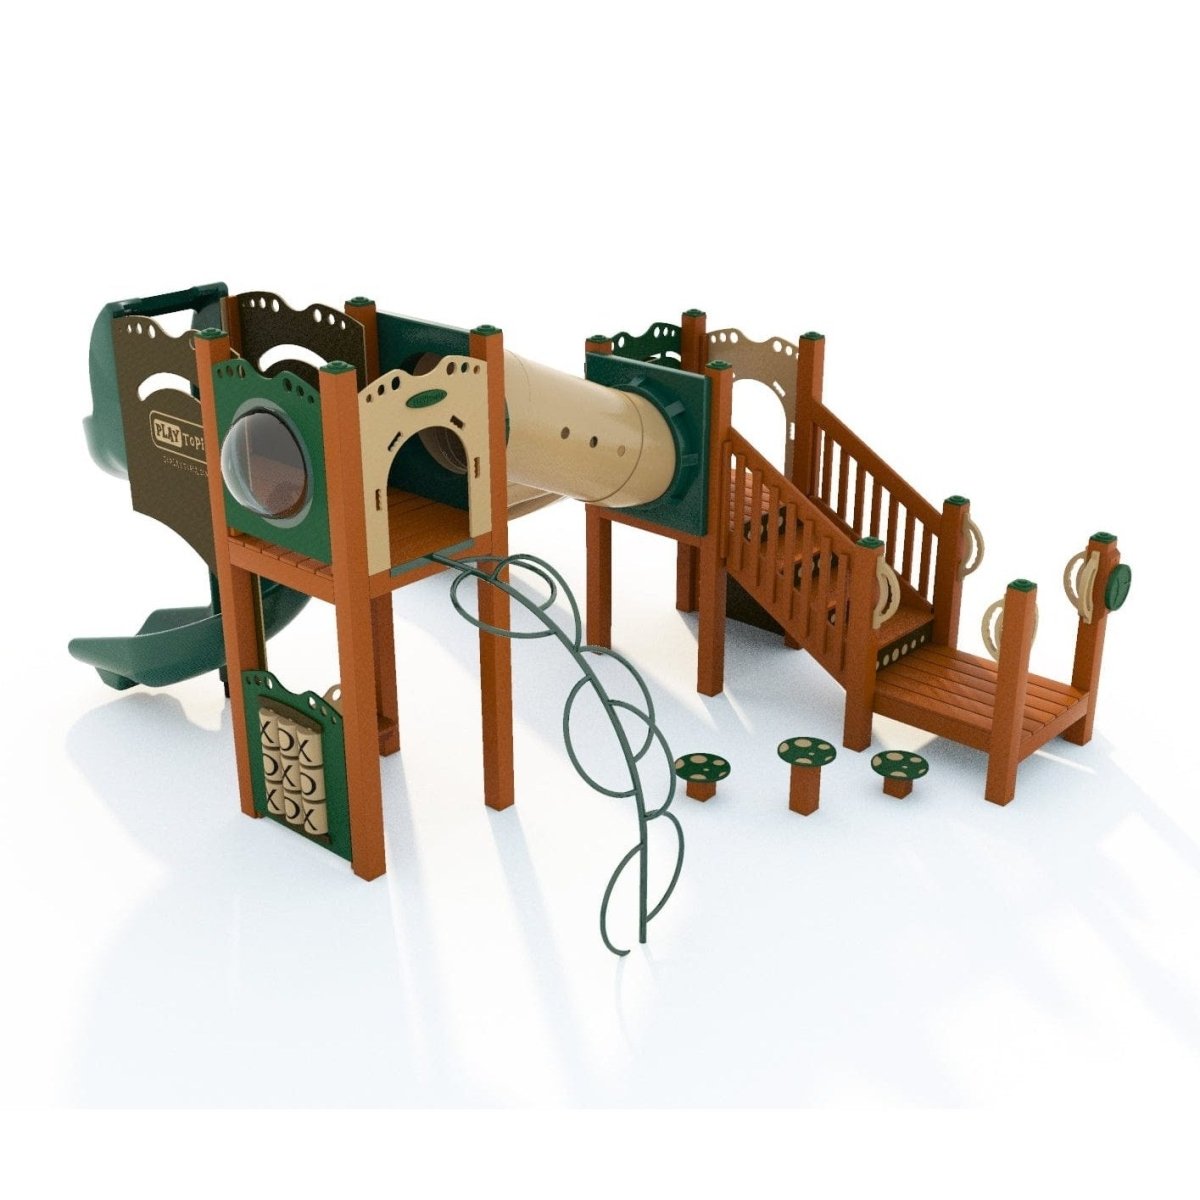 Kensley Playset - School-Age Playgrounds - Playtopia, Inc.